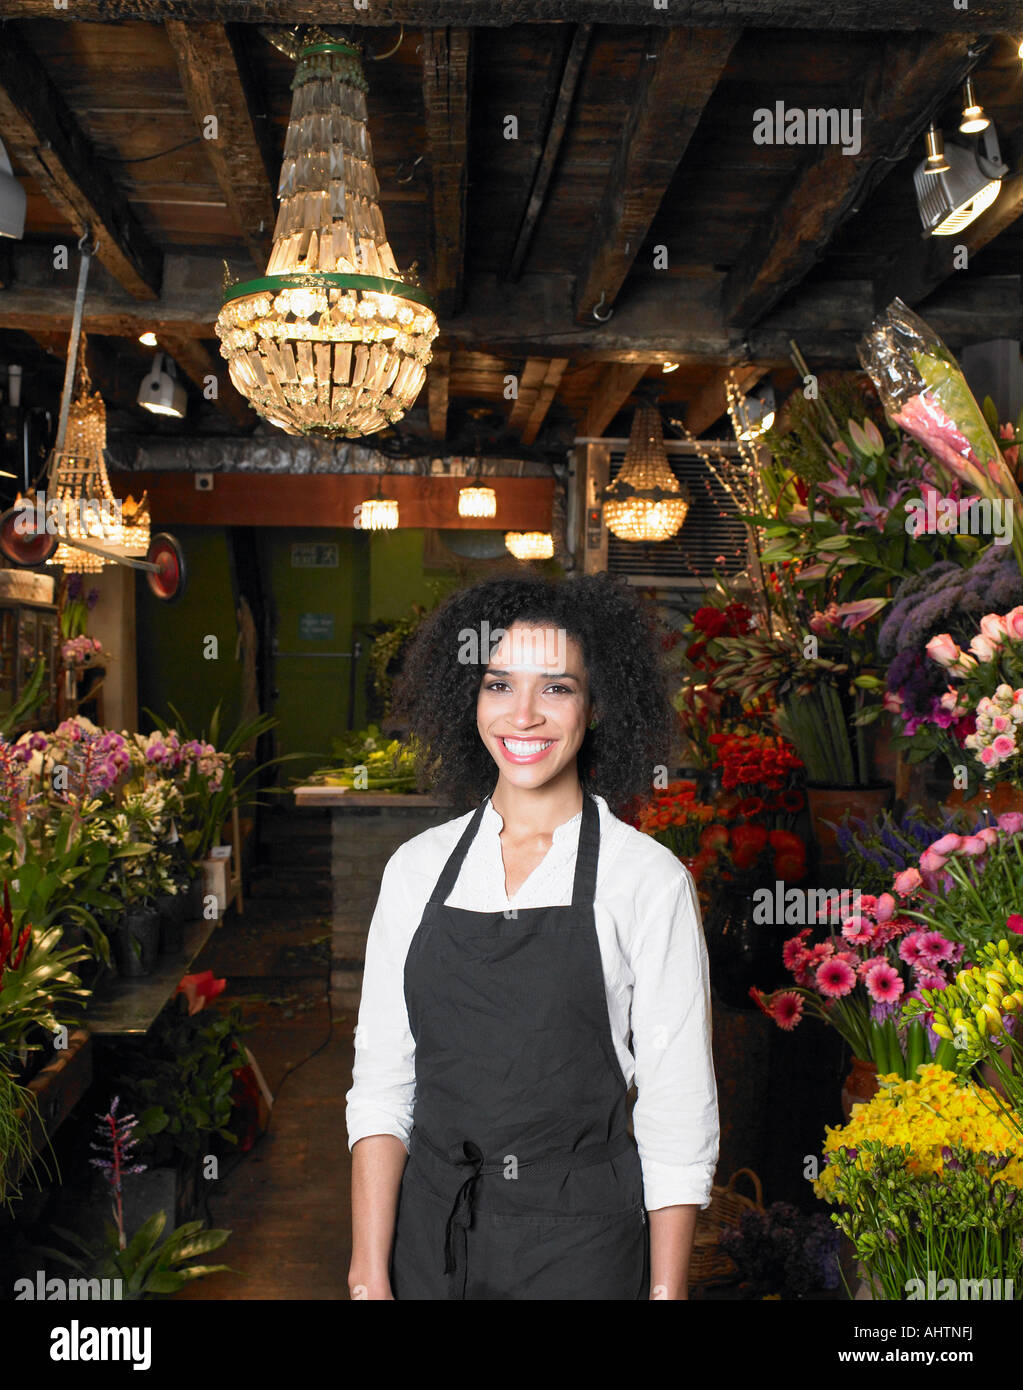 Jeune femme debout dans fleuriste shop, smiling, portrait Banque D'Images